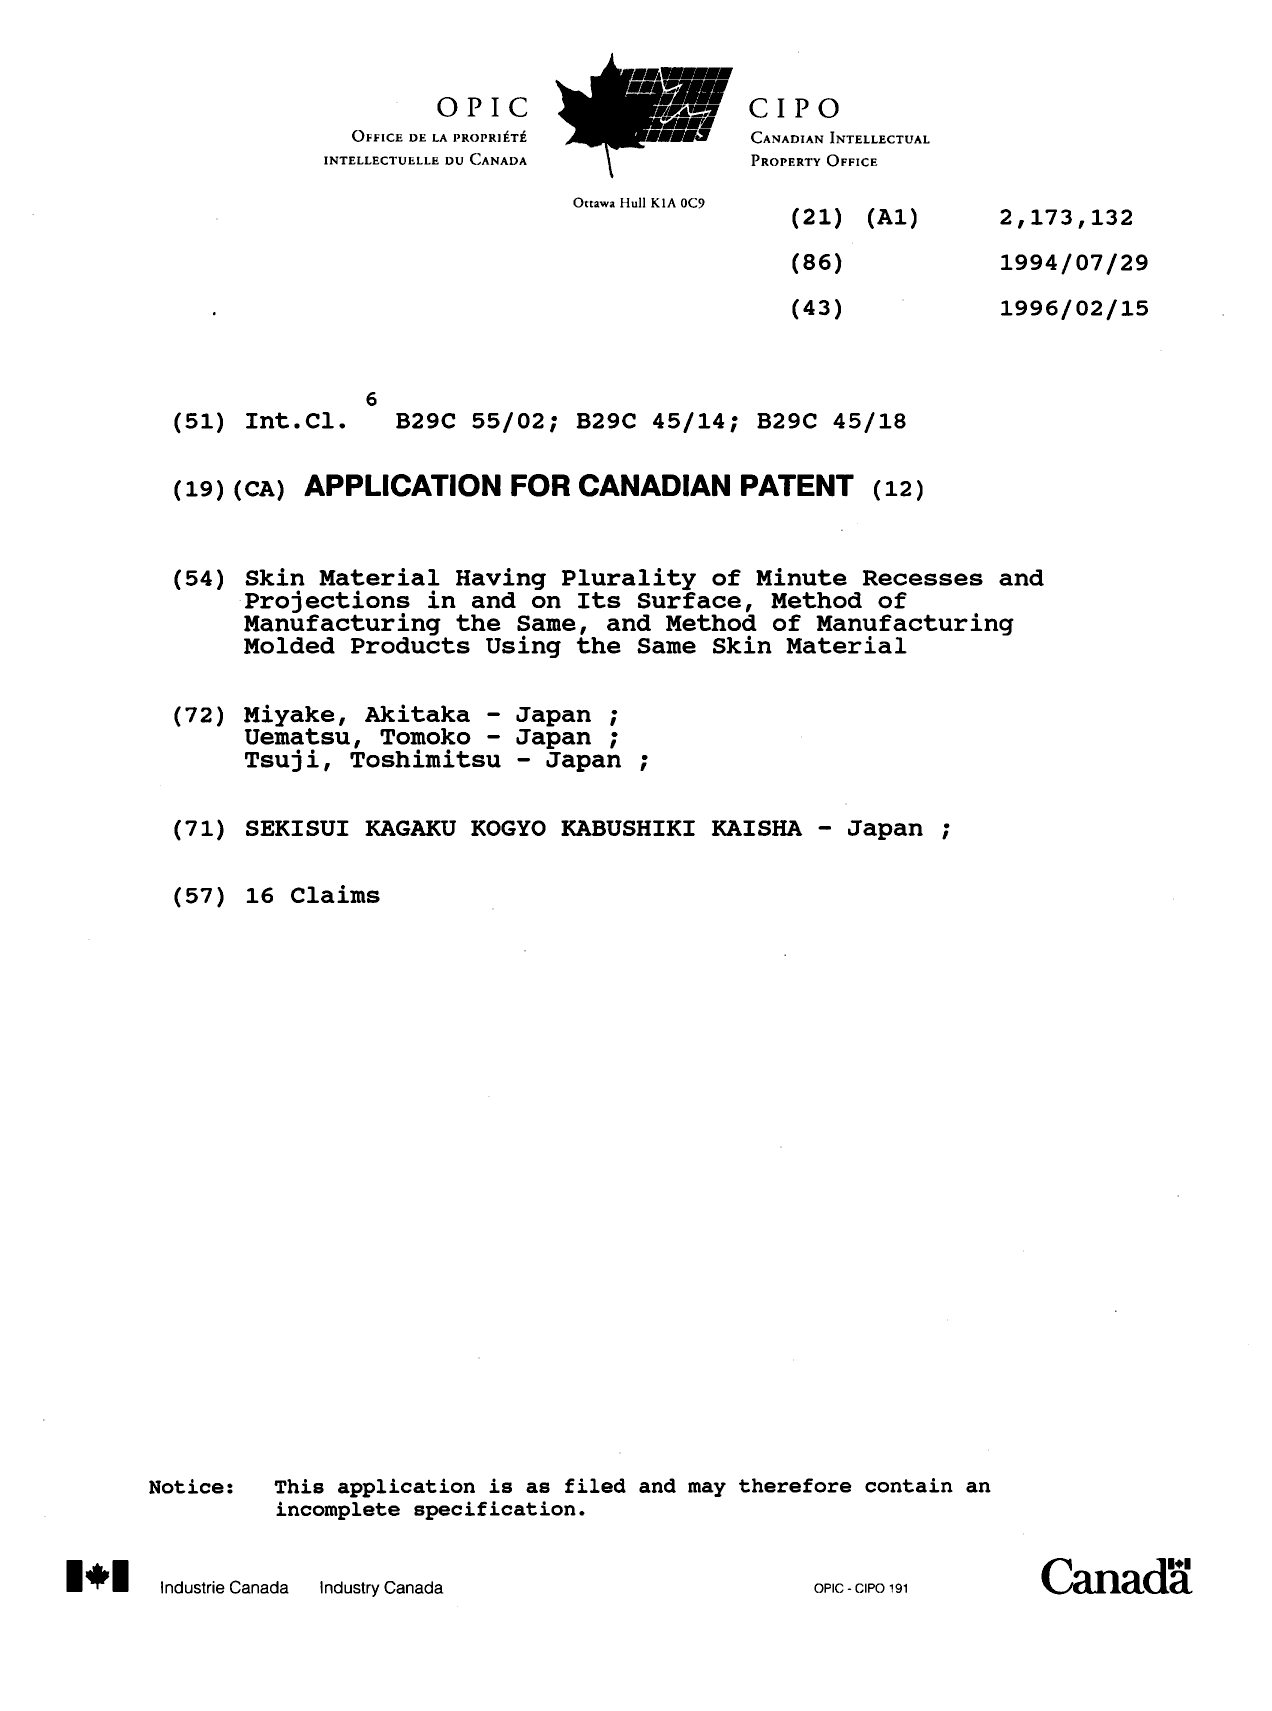 Document de brevet canadien 2173132. Page couverture 19960710. Image 1 de 1